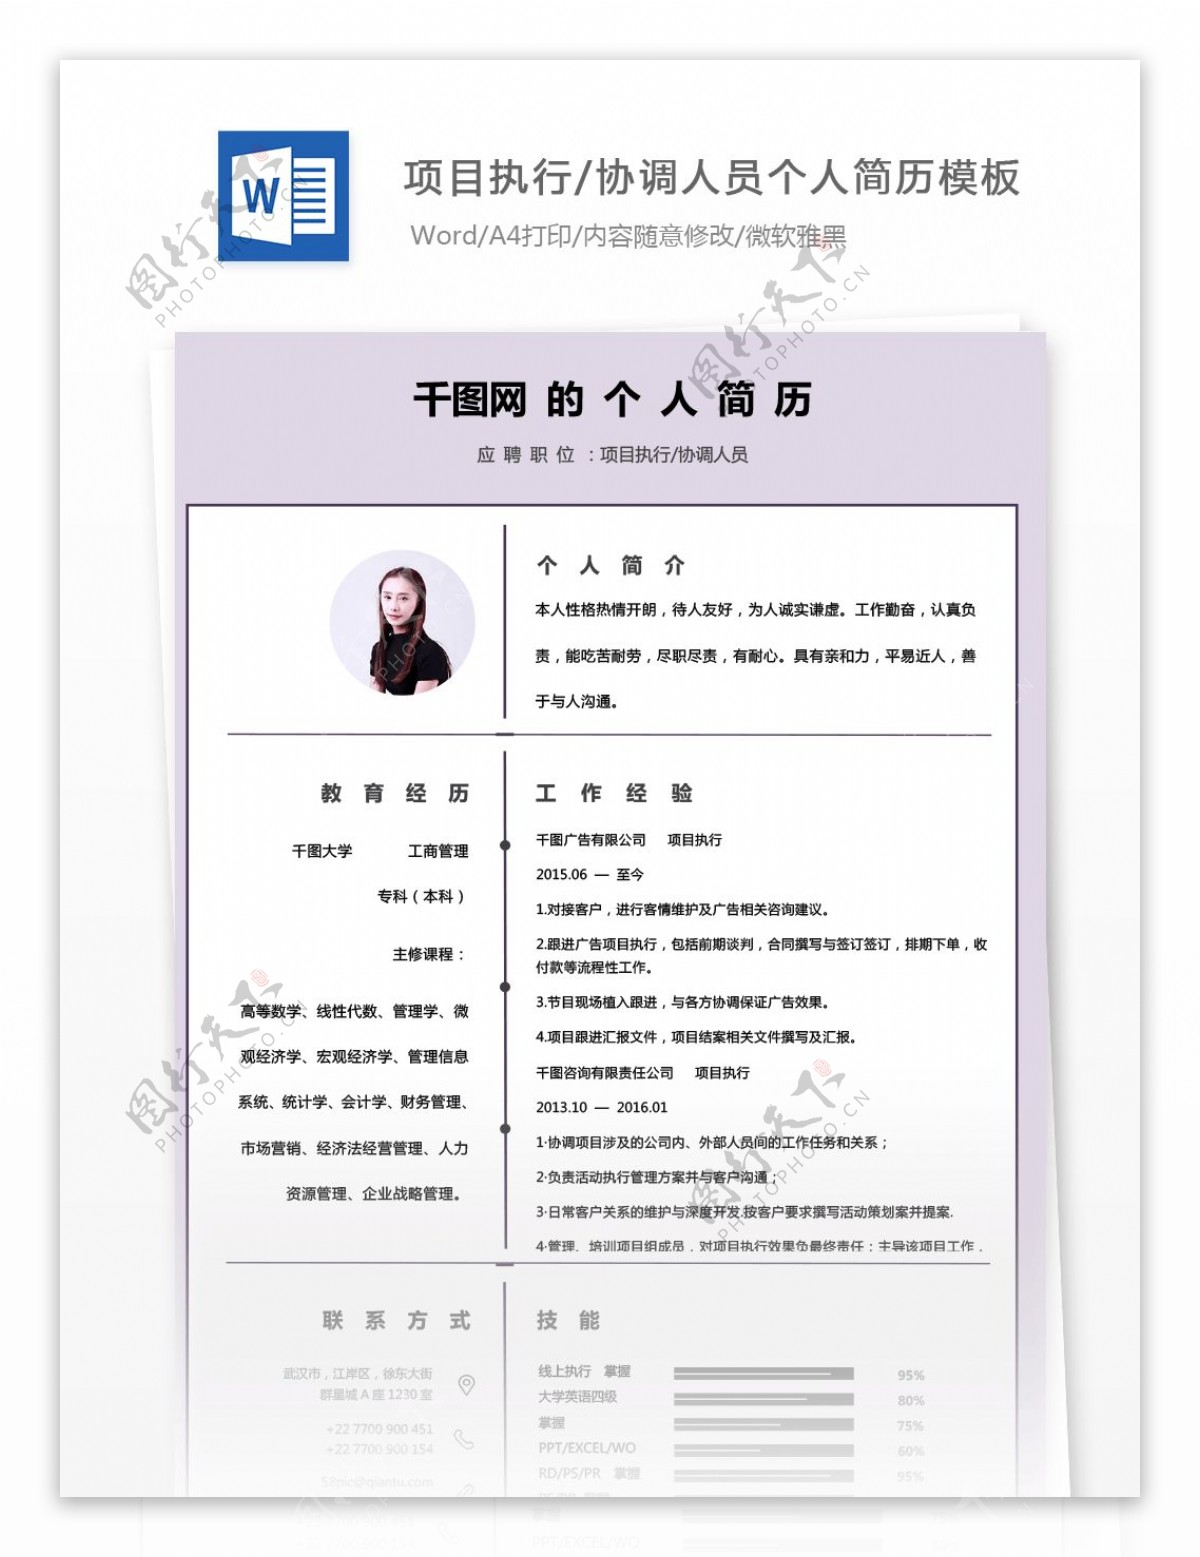 李仕莹项目执行协调人员应届毕业生简历表